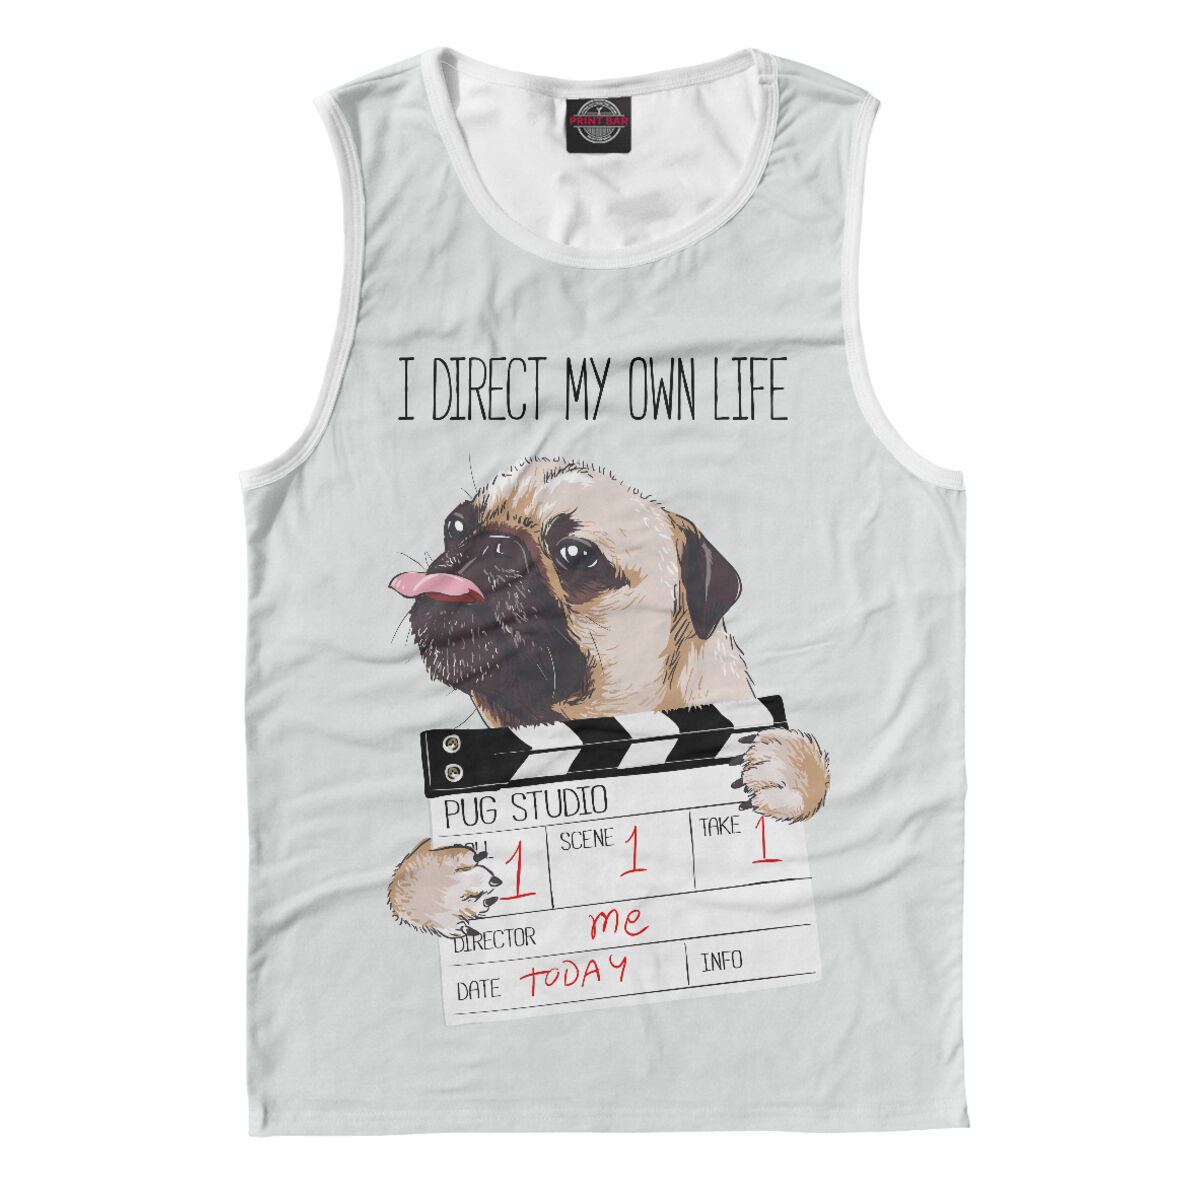 Pug Life футболка. Pug Life футболка фиолетовая с мопсами. My own life